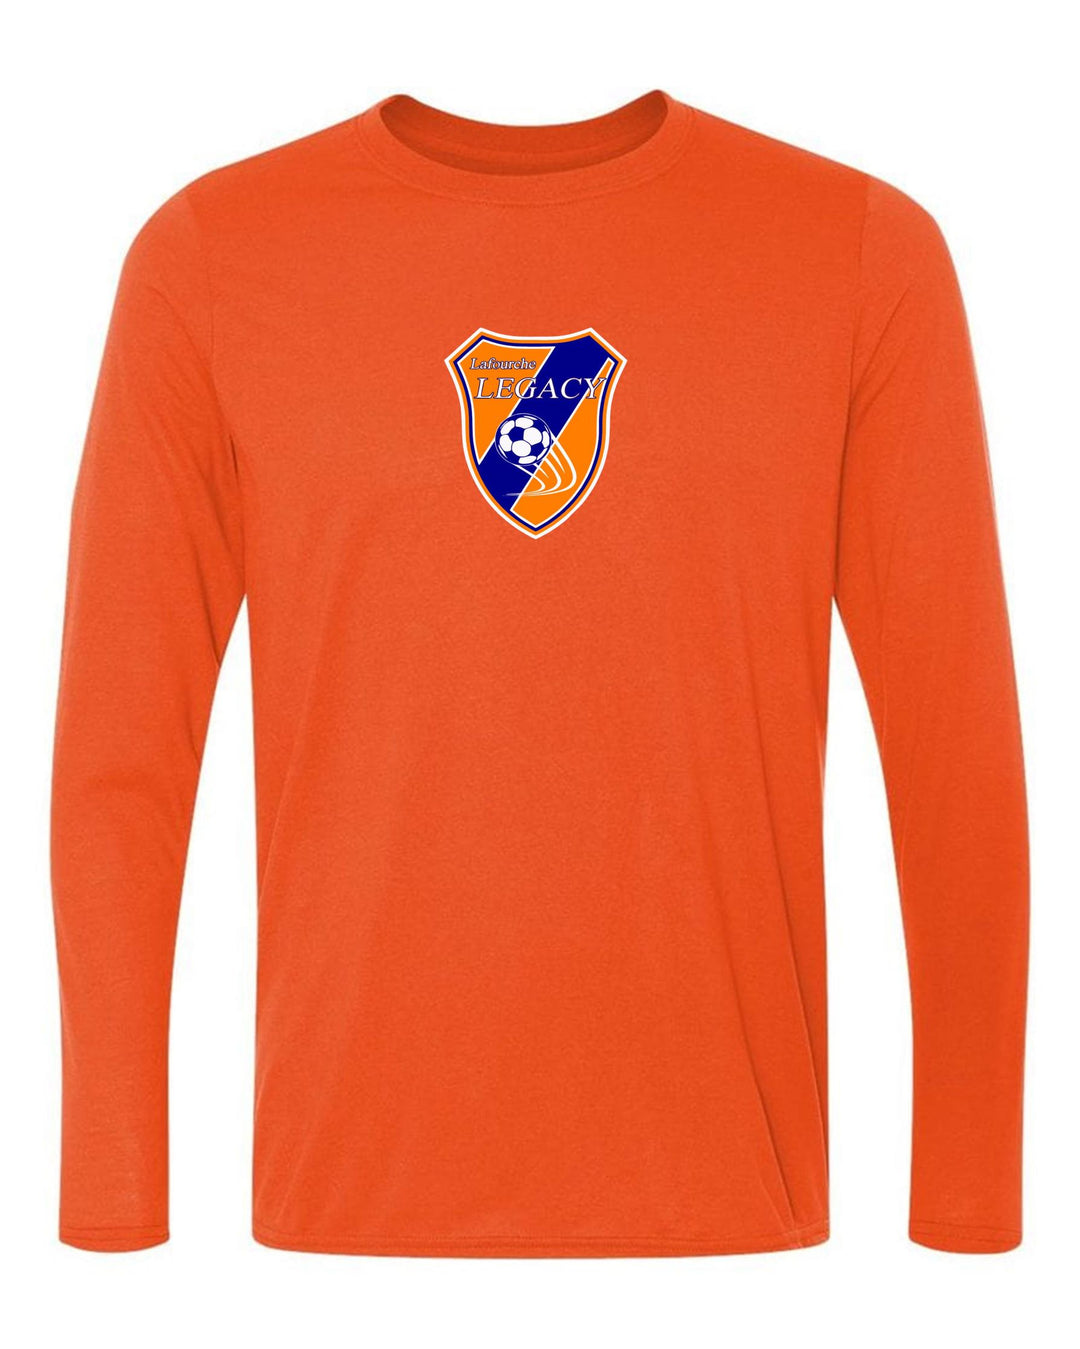 Lefourche Legacy Long-sleeve T-shirt - Navy or Orange  YOUTH LARGE ORANGE - Third Coast Soccer